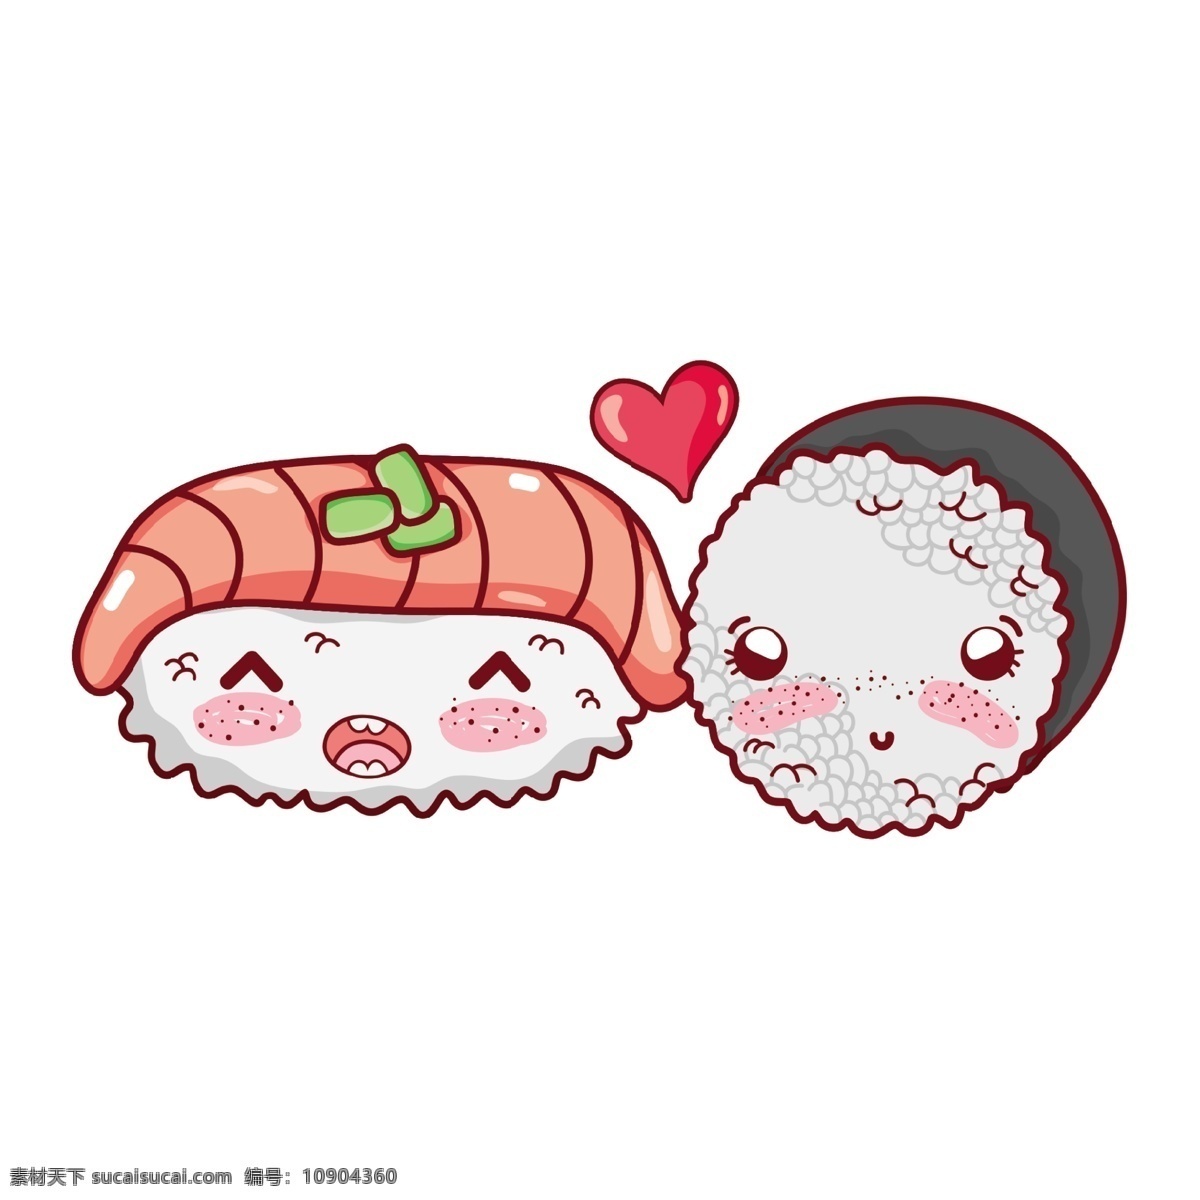 卡通 日本 寿司 卡通日本寿司 卡哇伊 美食 餐饮 白饭 三文鱼 可爱 鱼 海鲜 食品蔬菜水果 卡通设计